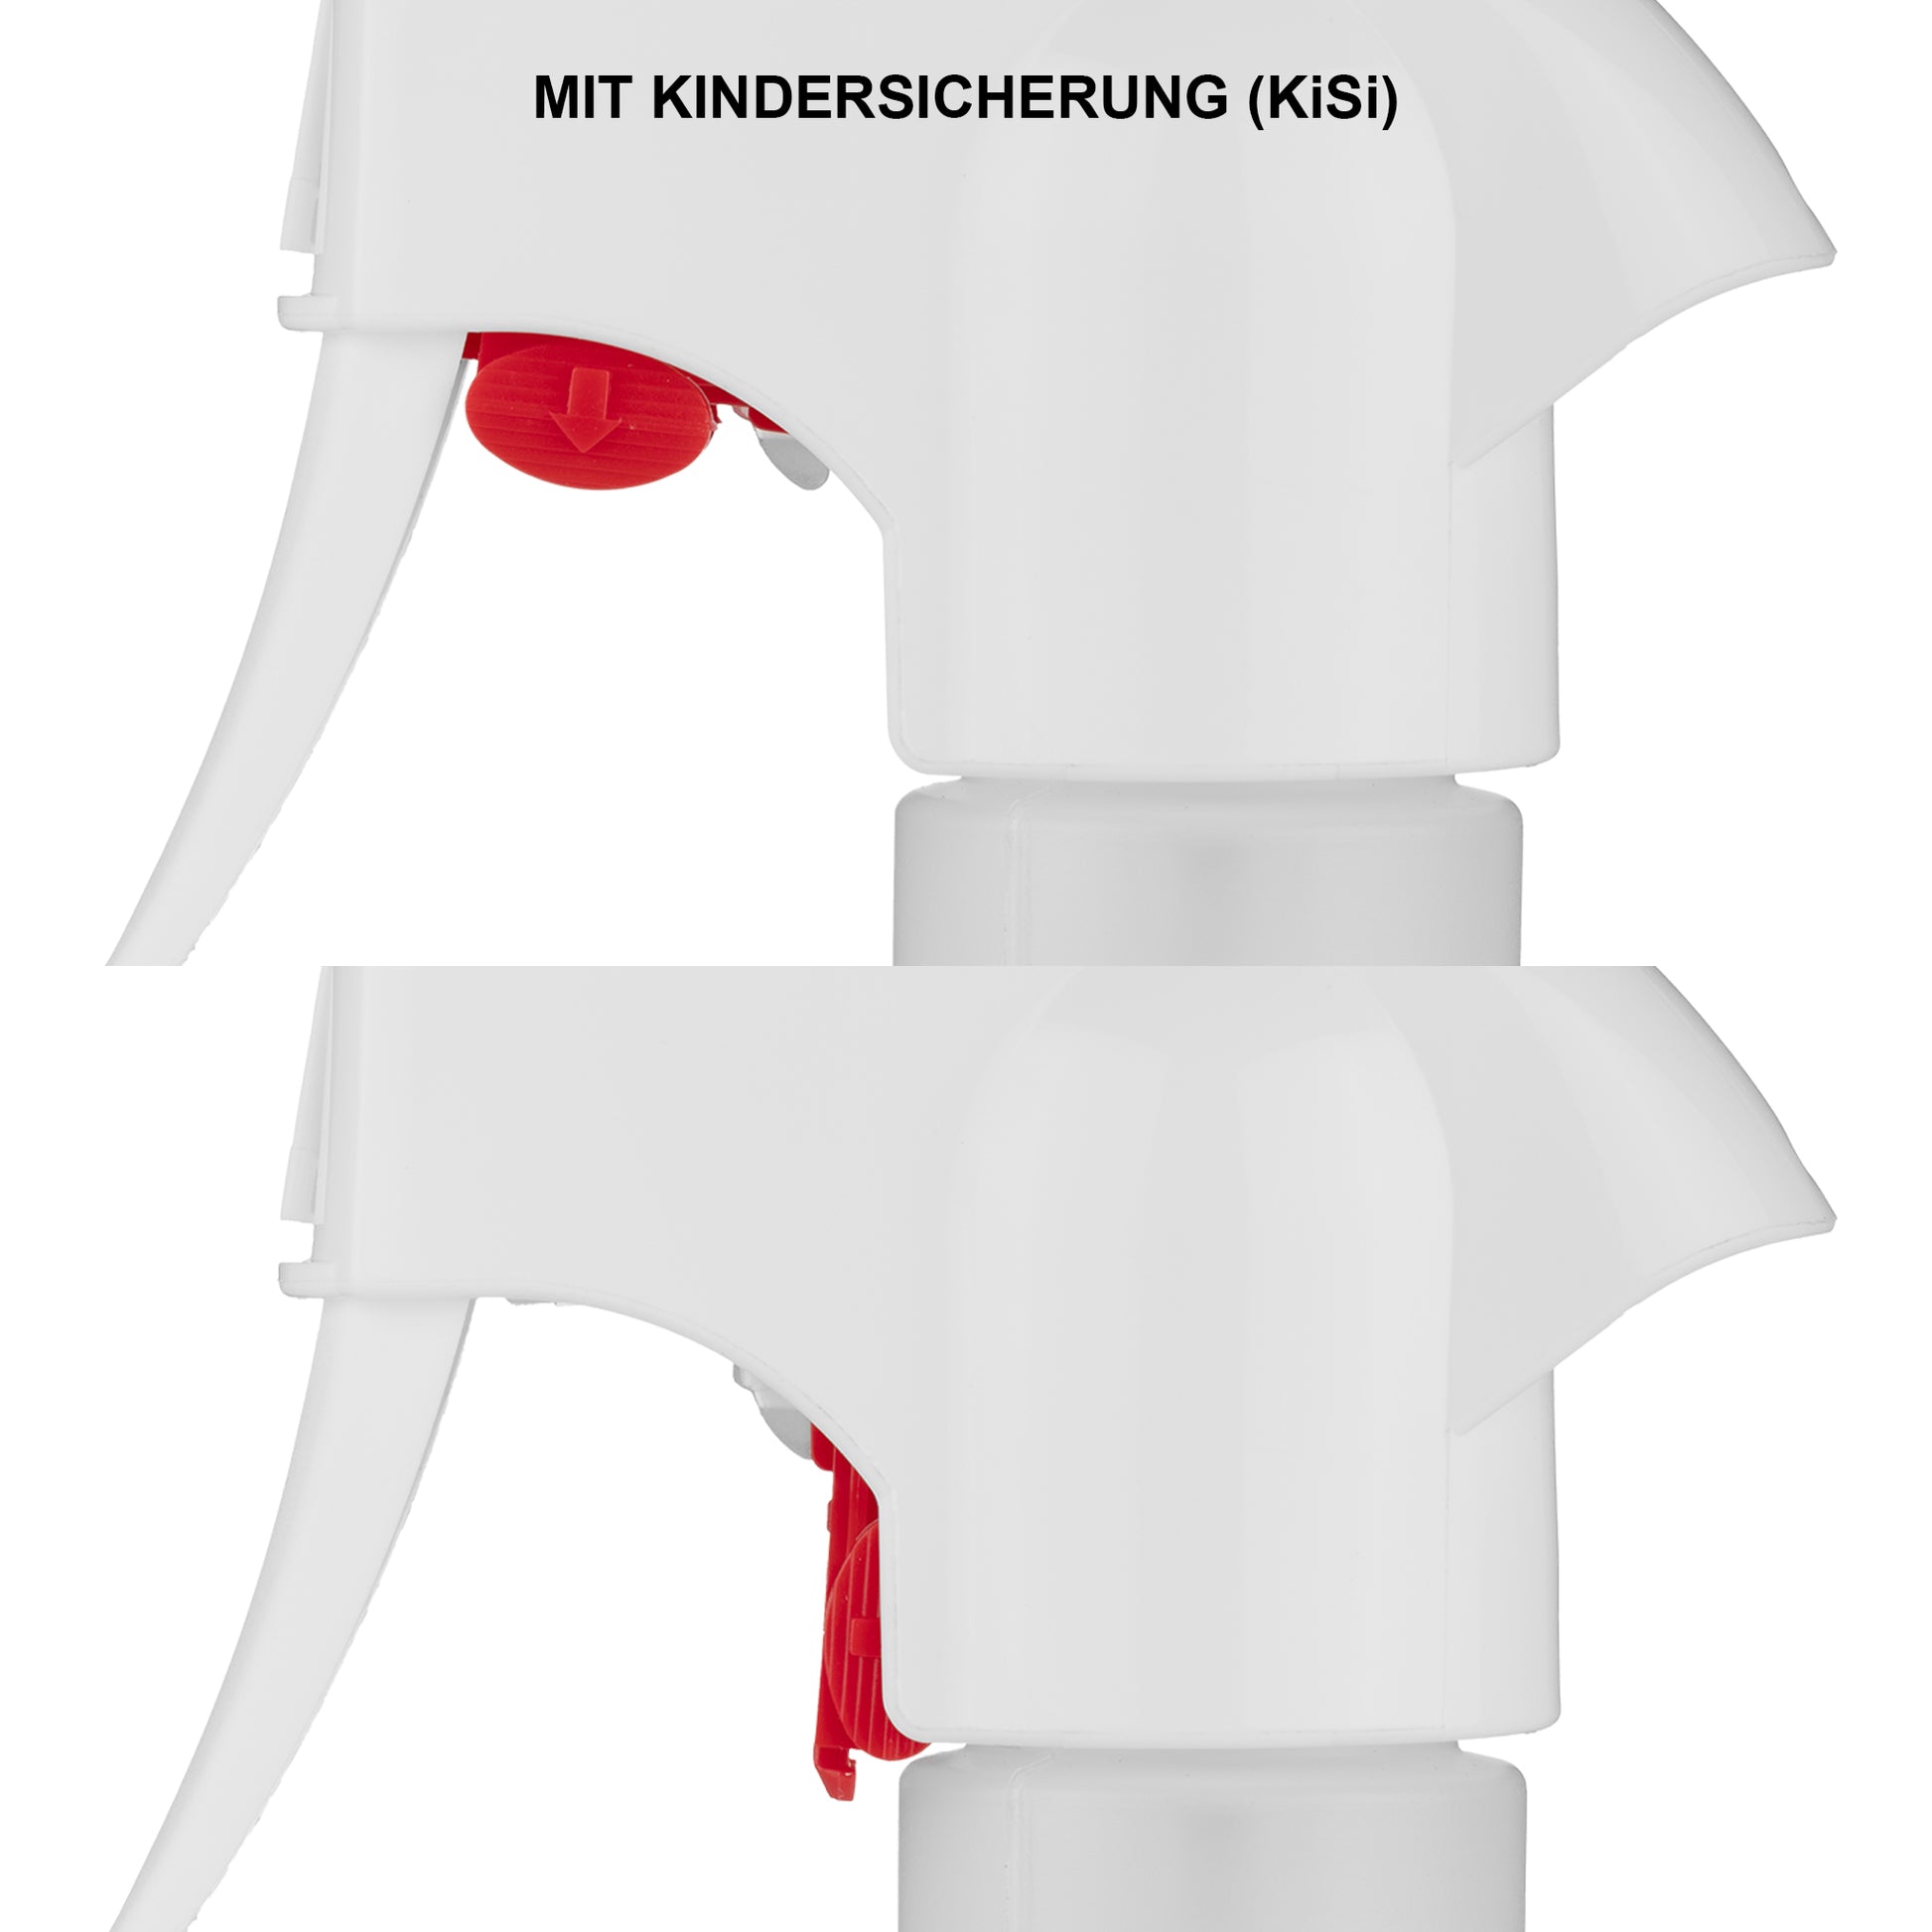 CLEANPRODUCTS Sprühkopf mit Kindersicherung (KiSi) für 500 ml Sprühflasche Natur